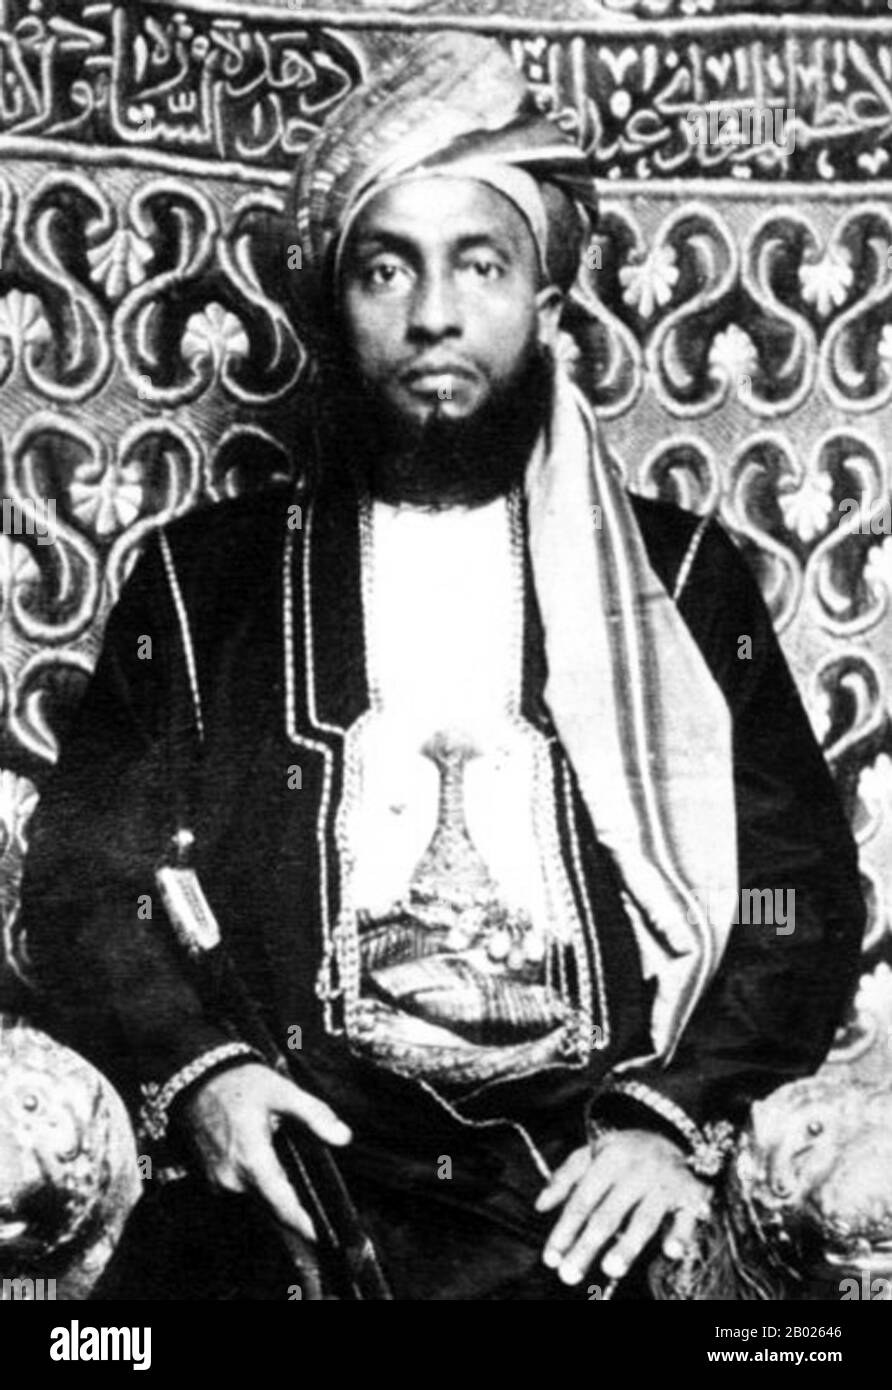 Sayyid Ali bin A Déclaré qu'Al-Bussaid, GCSI (1854 – 5 mars 1893) (arabe : علي بن سعيد البوسعيد‎) était le quatrième sultan de Zanzibar. Il dirige Zanzibar du 13 février 1890 au 5 mars 1893 et fut remplacé par son neveu, Hamad bin Thuwaini Al-Bussaid. Banque D'Images